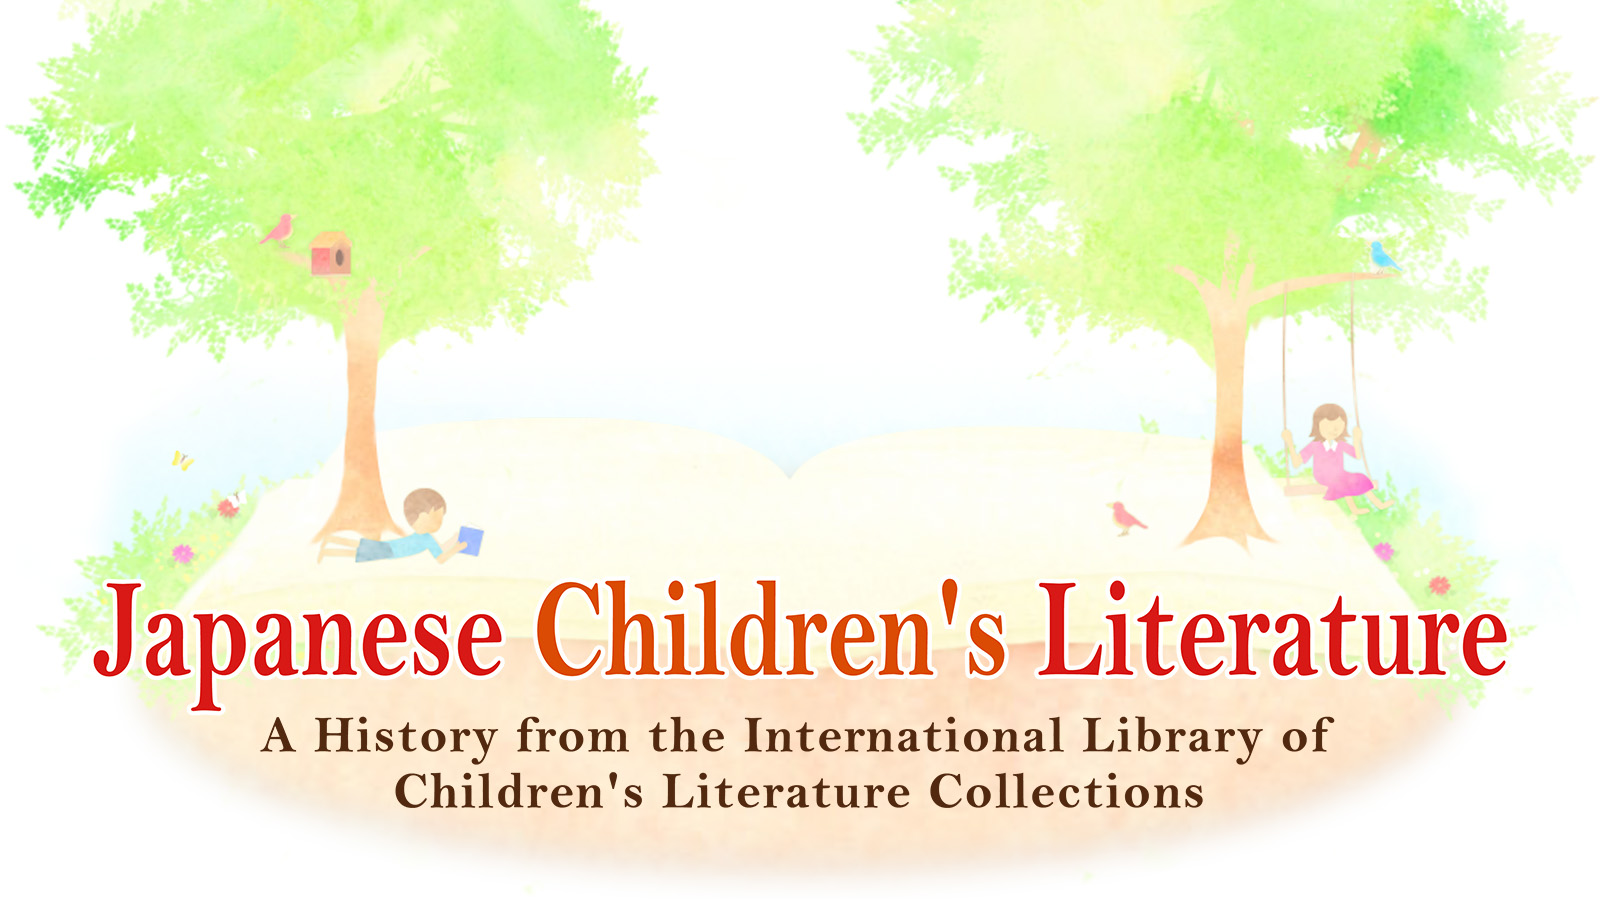 Japanese Children's Literature